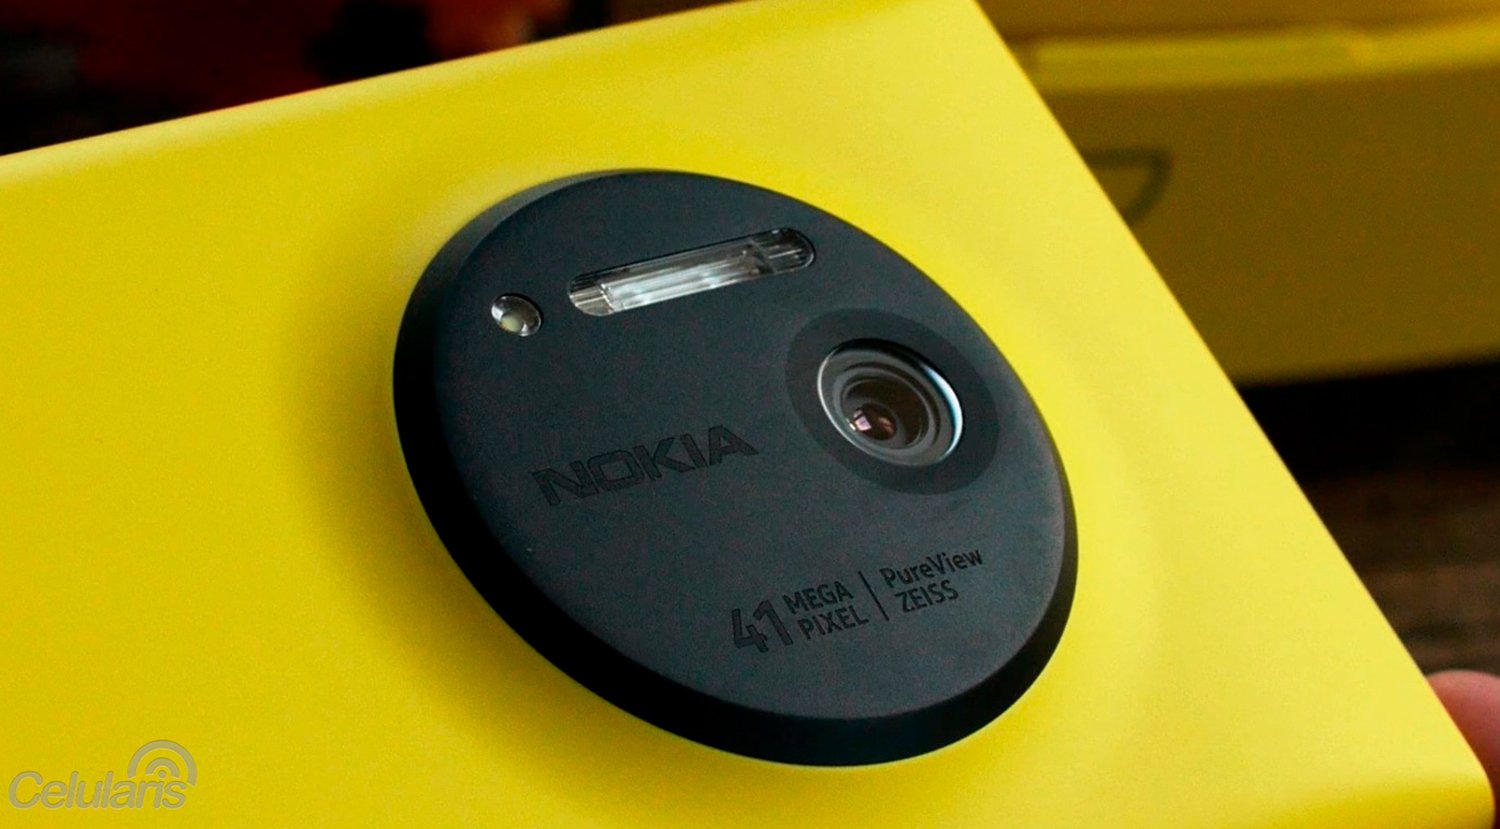 L'un des Nokia les plus emblématiques reviendra sur le marché avec Android sous le bras